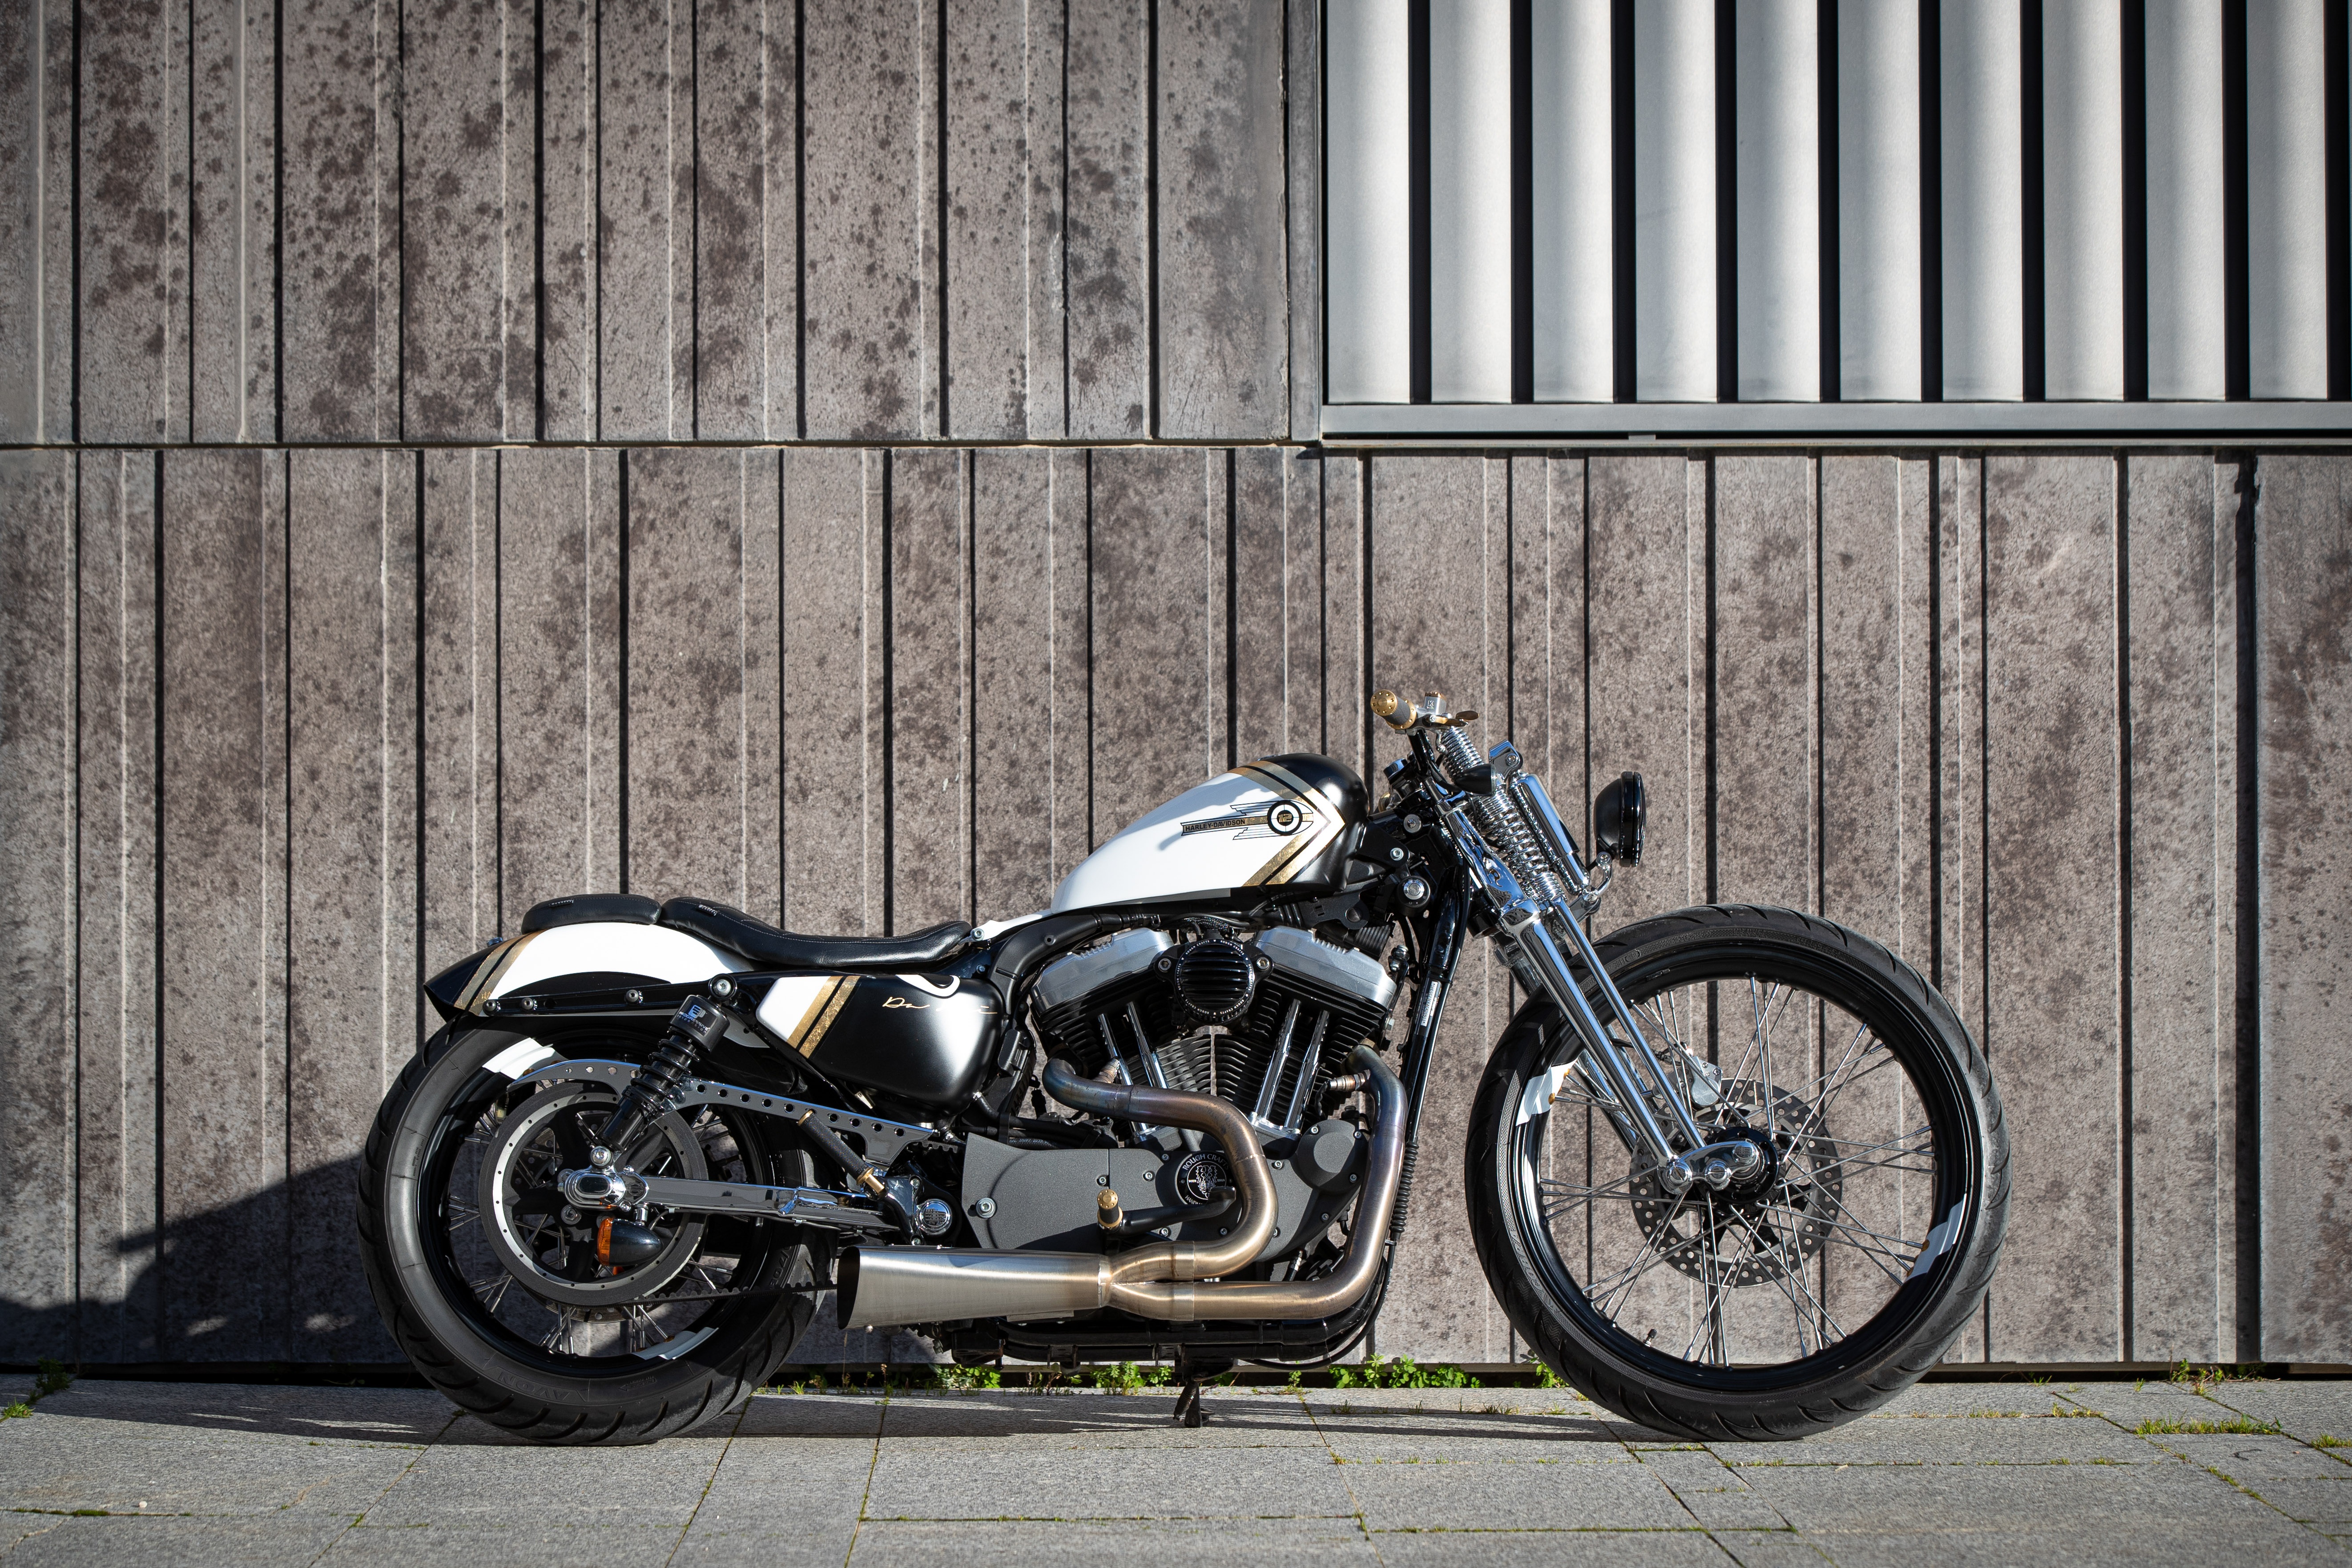 Ngam dan xe Harley-Davidson Sportster lot xac voi ban do Sykes hinh anh 8 2020_Harley_Davidson_Sportster_Custom_5276.jpg